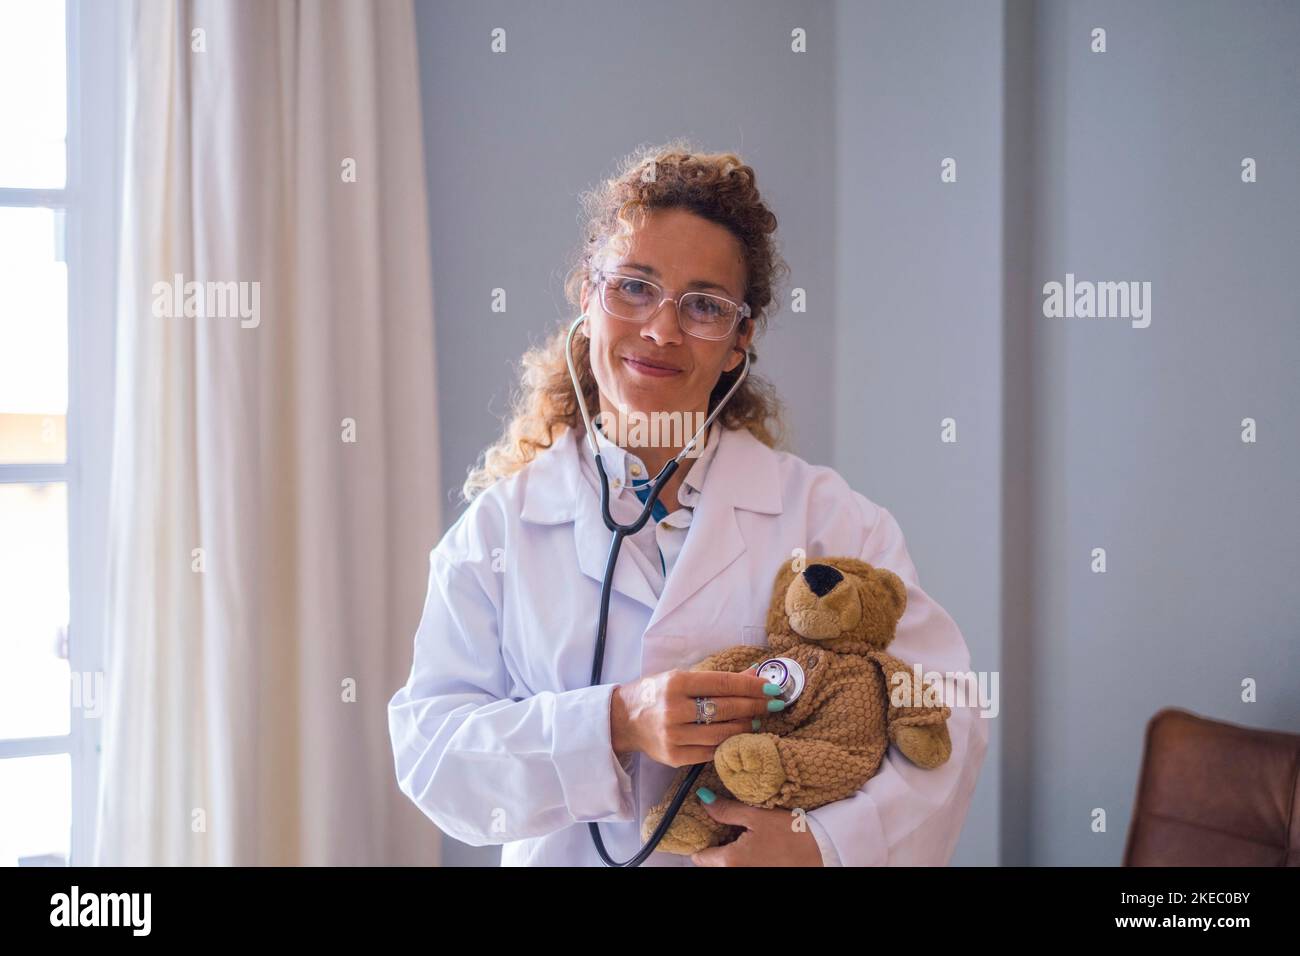 Portriat de jeune femme médecin en uniforme vérifiant l'ours en peluche avec stéthoscope à la clinique. Professionnel de la santé ou professionnel de la santé confiant qui examine l'ours en peluche à l'hôpital Banque D'Images